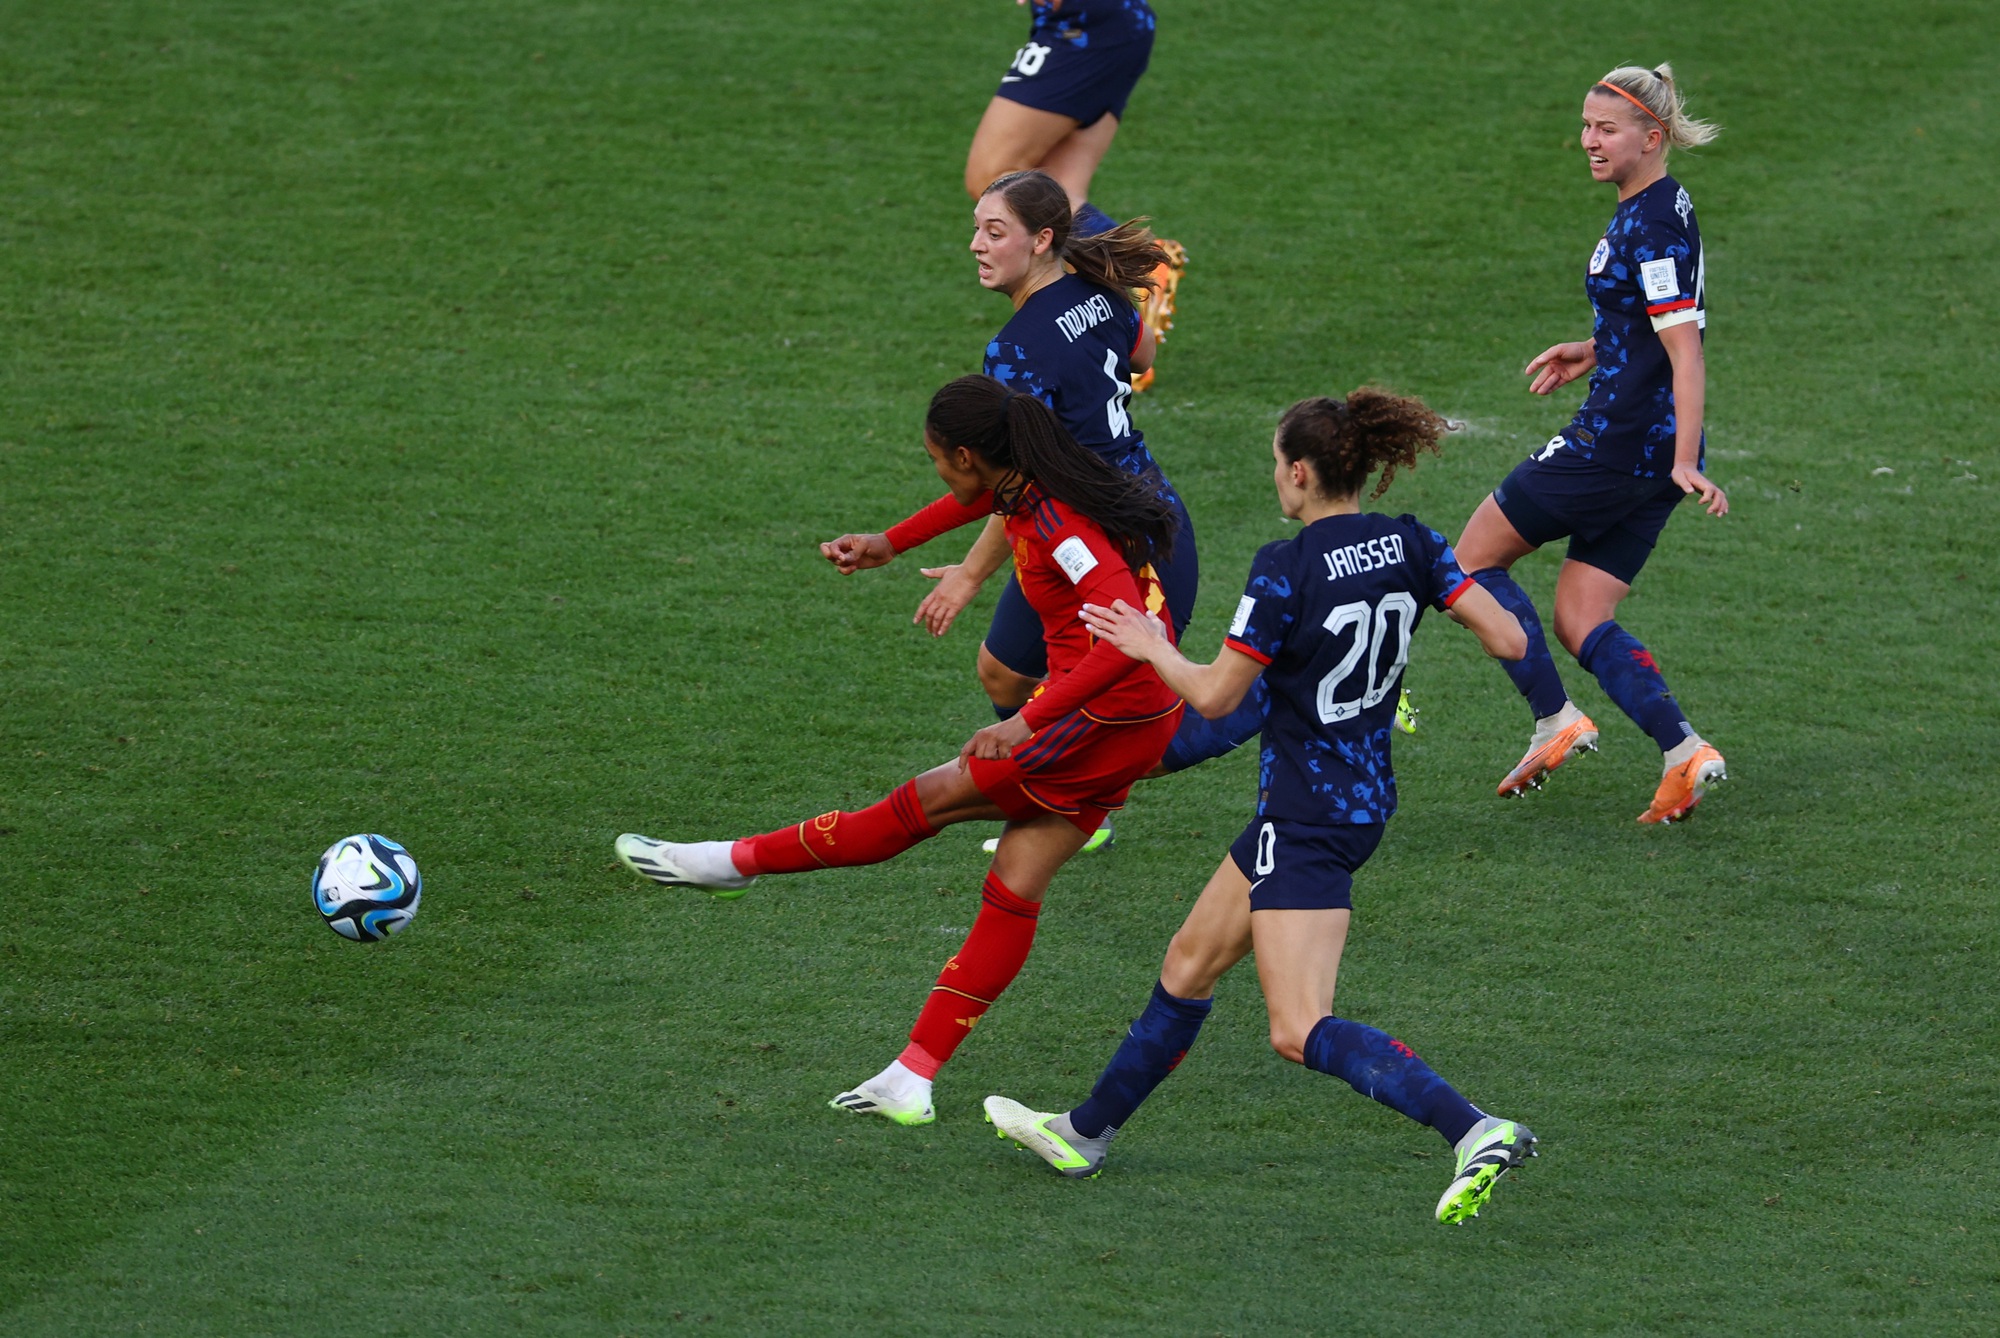 Tài năng điền kinh ghi bàn thắng vàng cho Tây Ban Nha tại World Cup nữ - Ảnh 1.